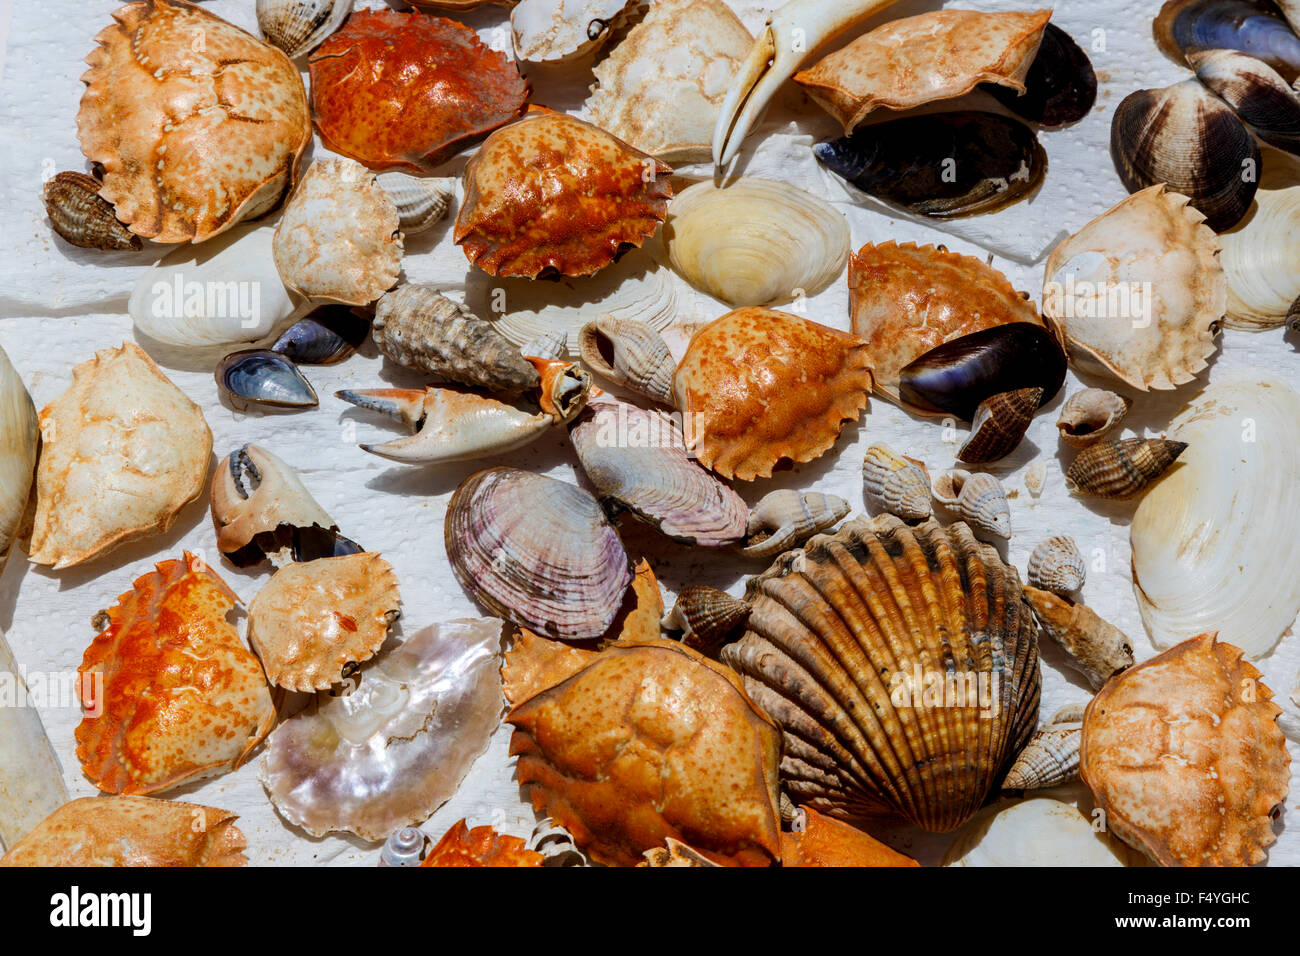 Eine Auswahl an verschiedenen Muscheln auf weißem Material Krebse Muscheln Austern Muscheln festgelegt Stockfoto